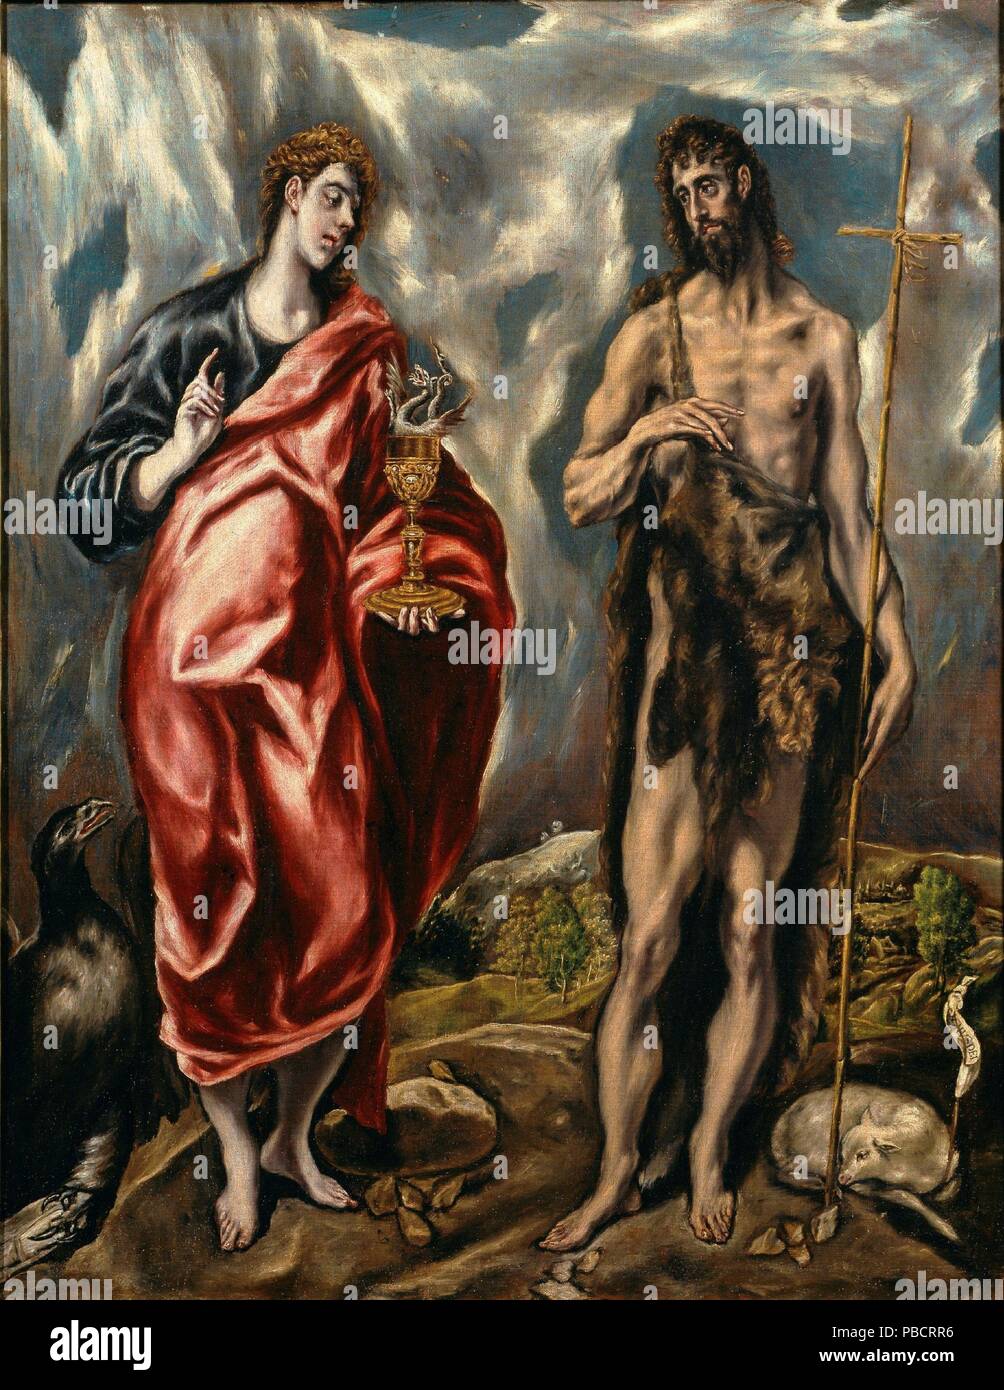 El Greco / 'Jean le Baptiste et saint Jean l'Évangéliste". 1600 - 1610.  Huile sur toile. Aussi connu sous le nom de l'oeuvre : SAN JUAN BAUTISTA Y  SAN JUAN EVANGELISTA. Musée :